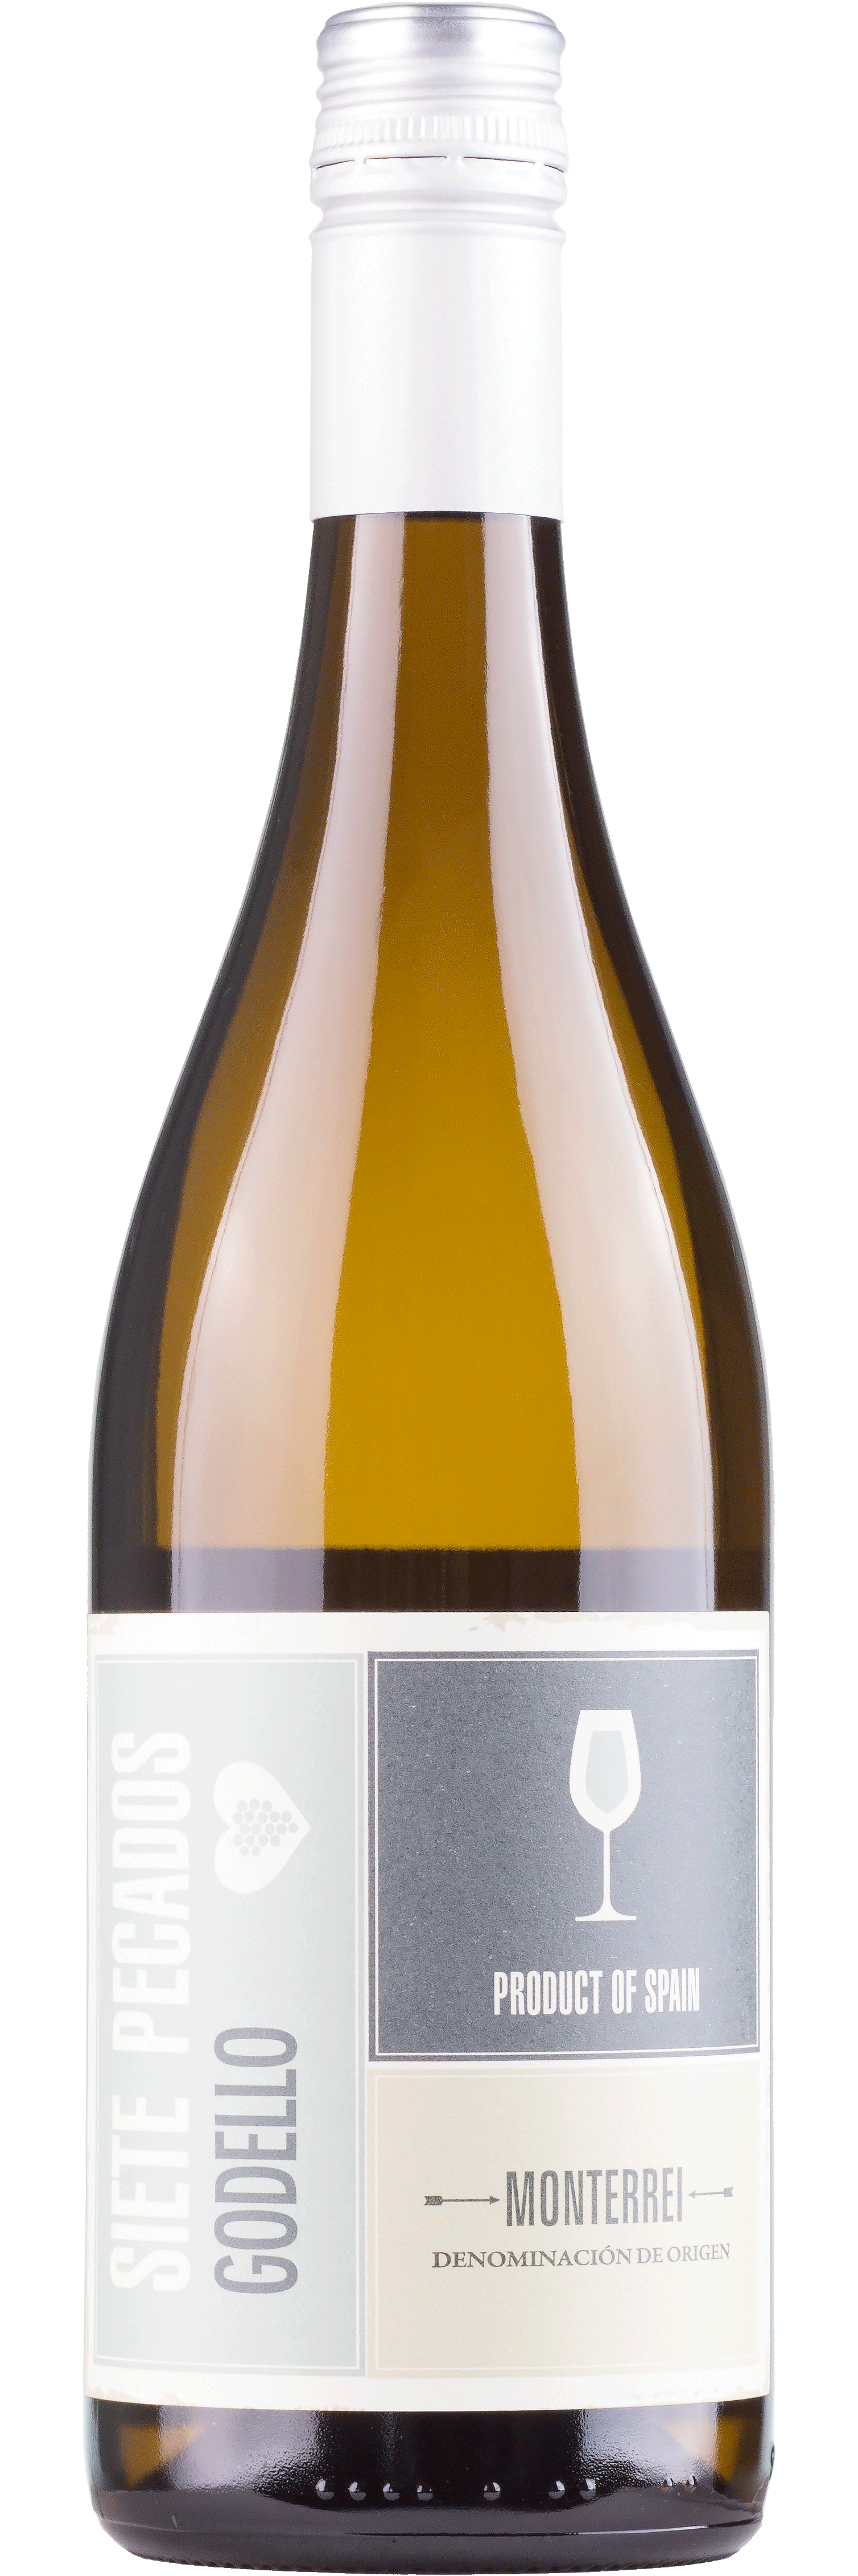 Siete Pecados Godello - Monterrei - Weißwein trocken - 0,75l - 13% vol.